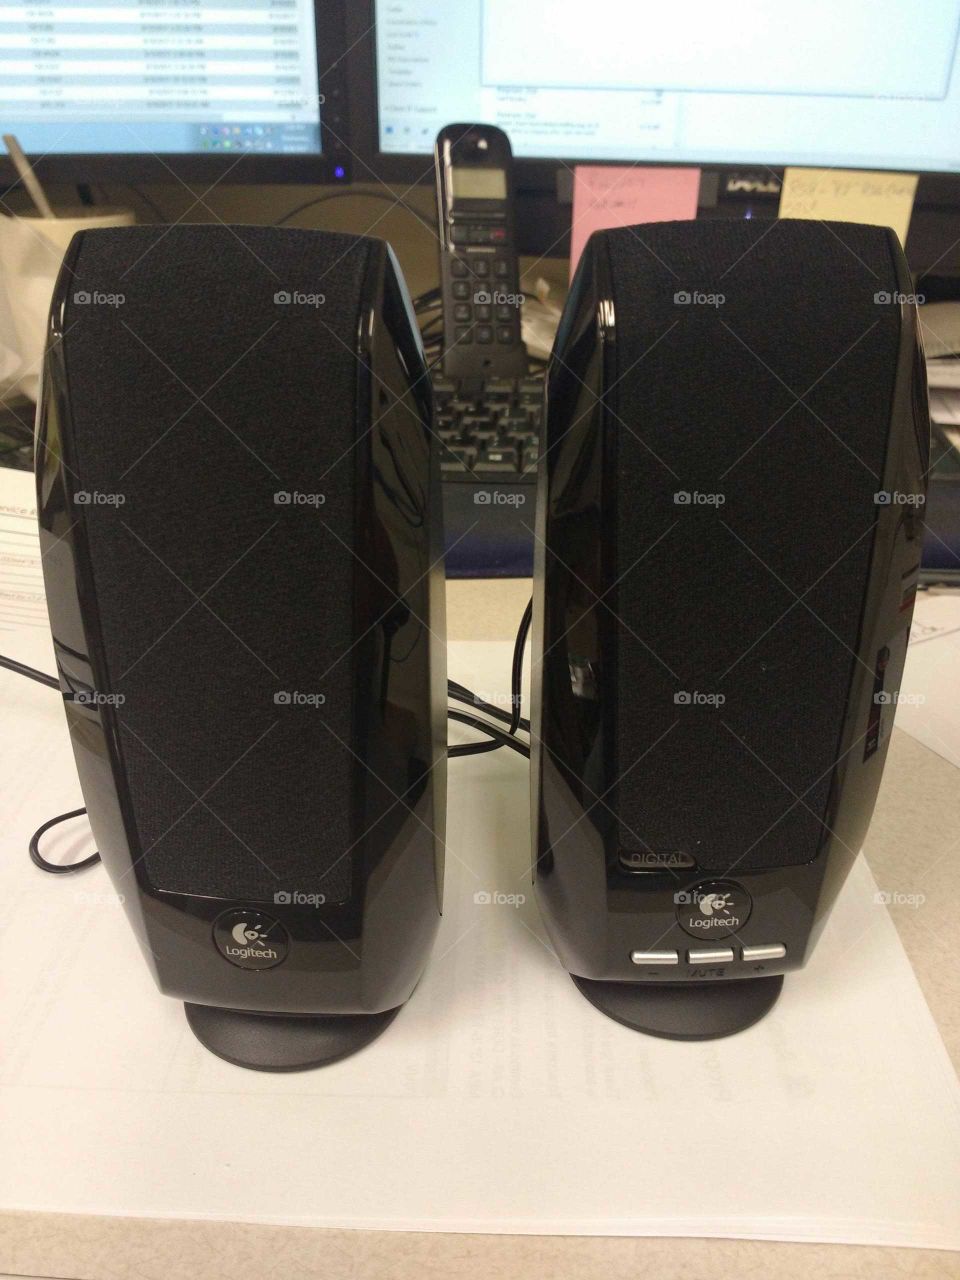 USB PC speakers by Logitech